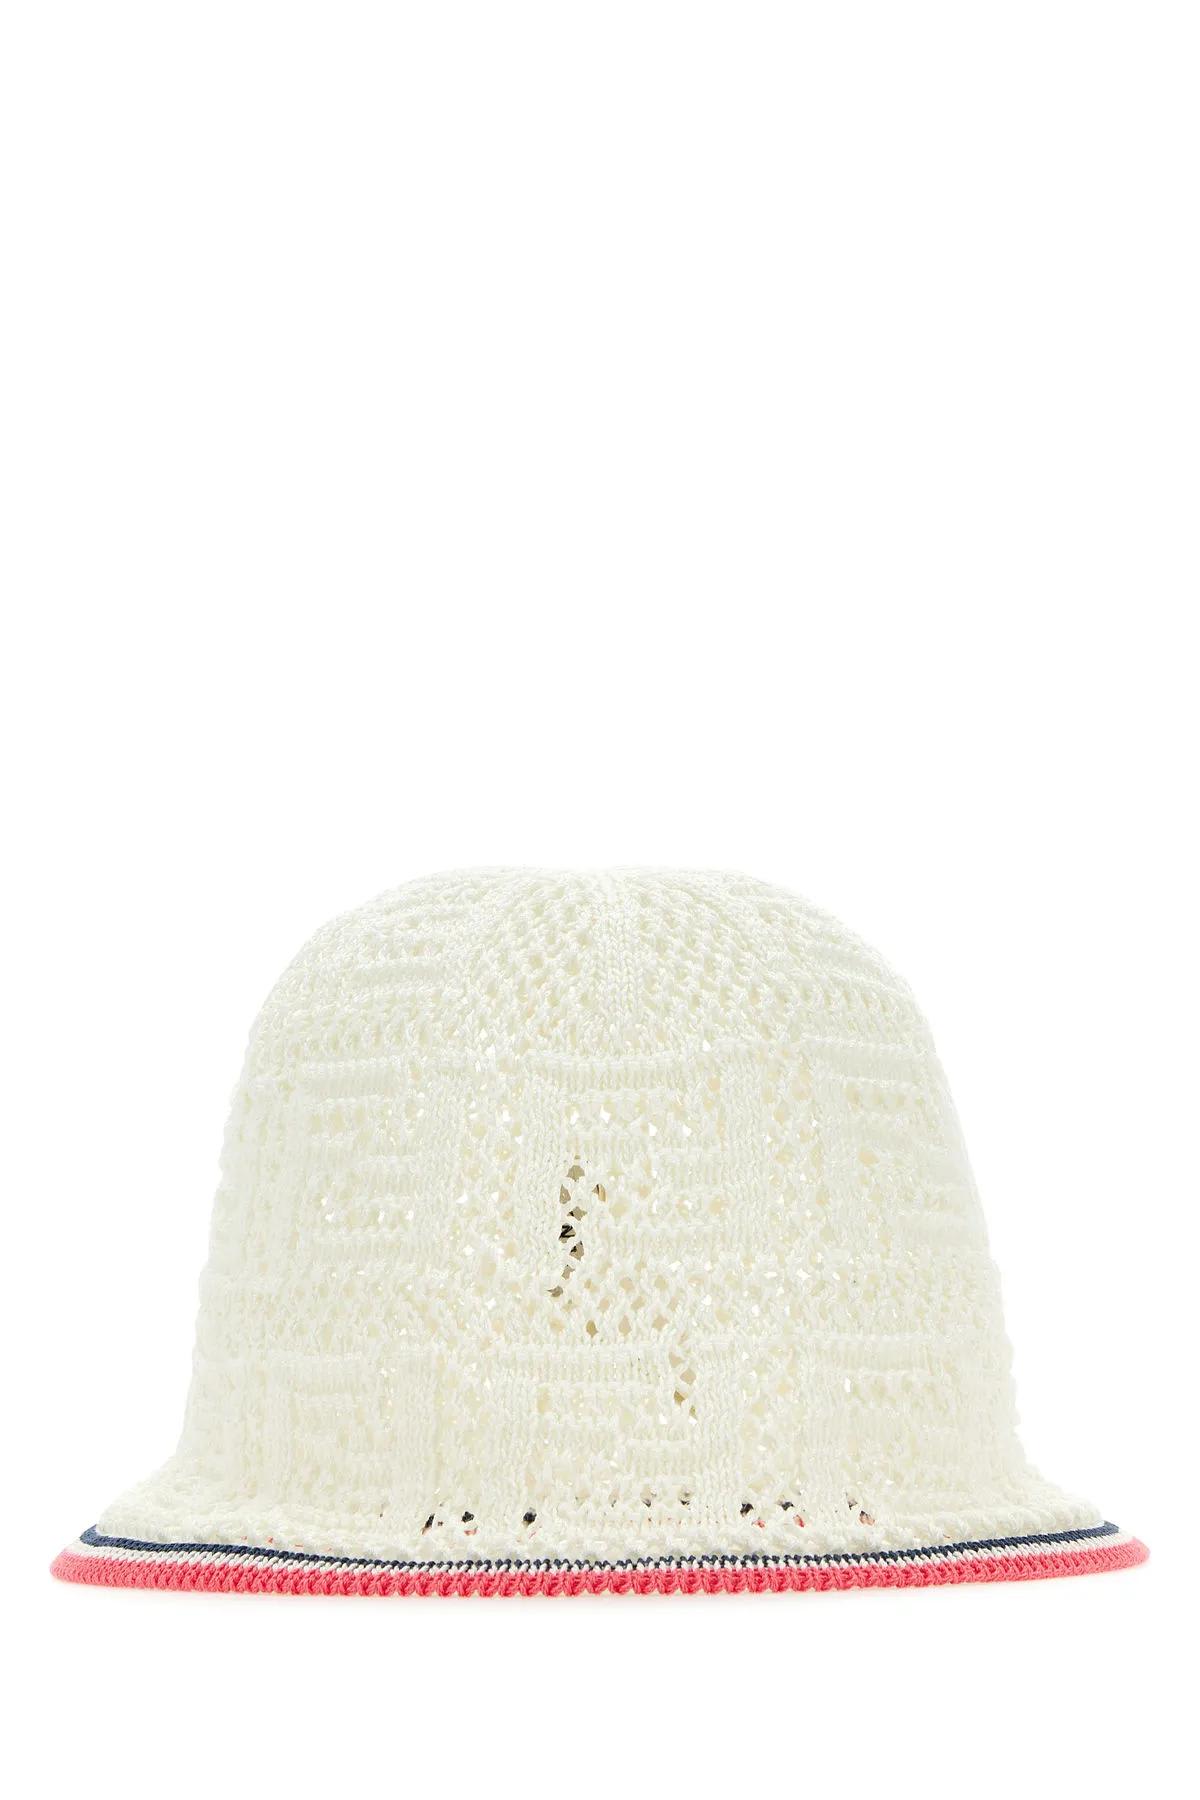 Fendi Woman White Crochet Bucket Hat In Bianco